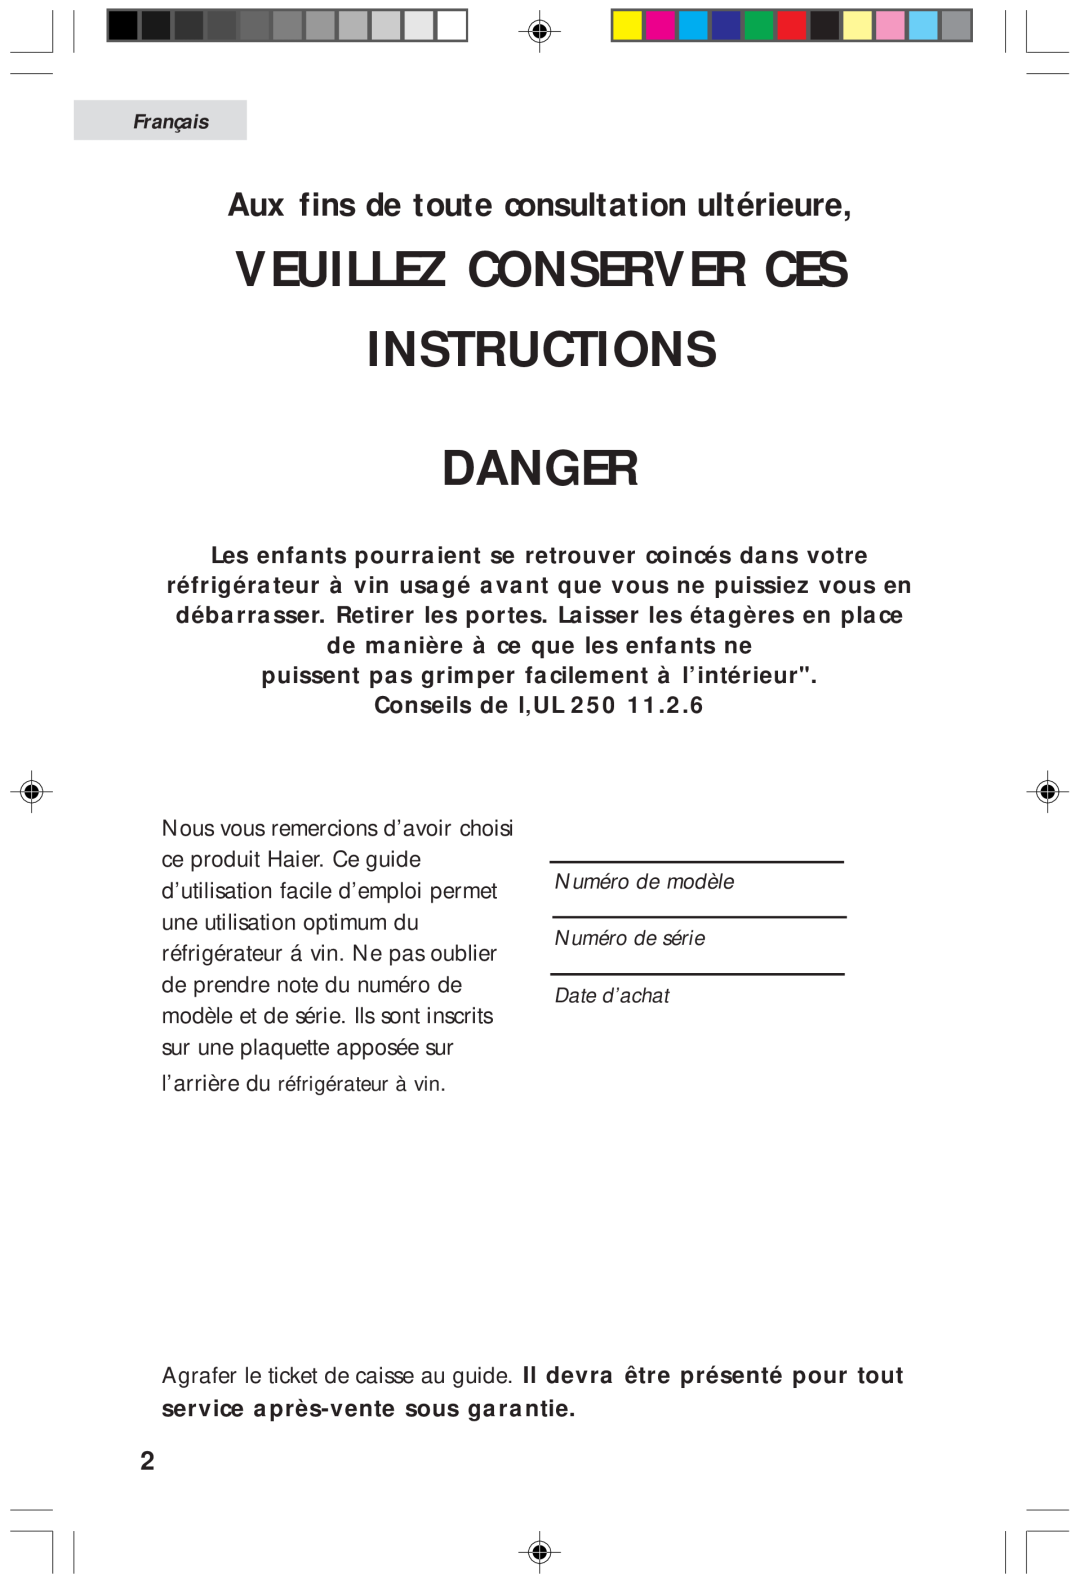 Haier HVF020A, HVFM20A Instructions Danger, Veuillez Conserver Ces, Aux fins de toute consultation ultérieure, Français 